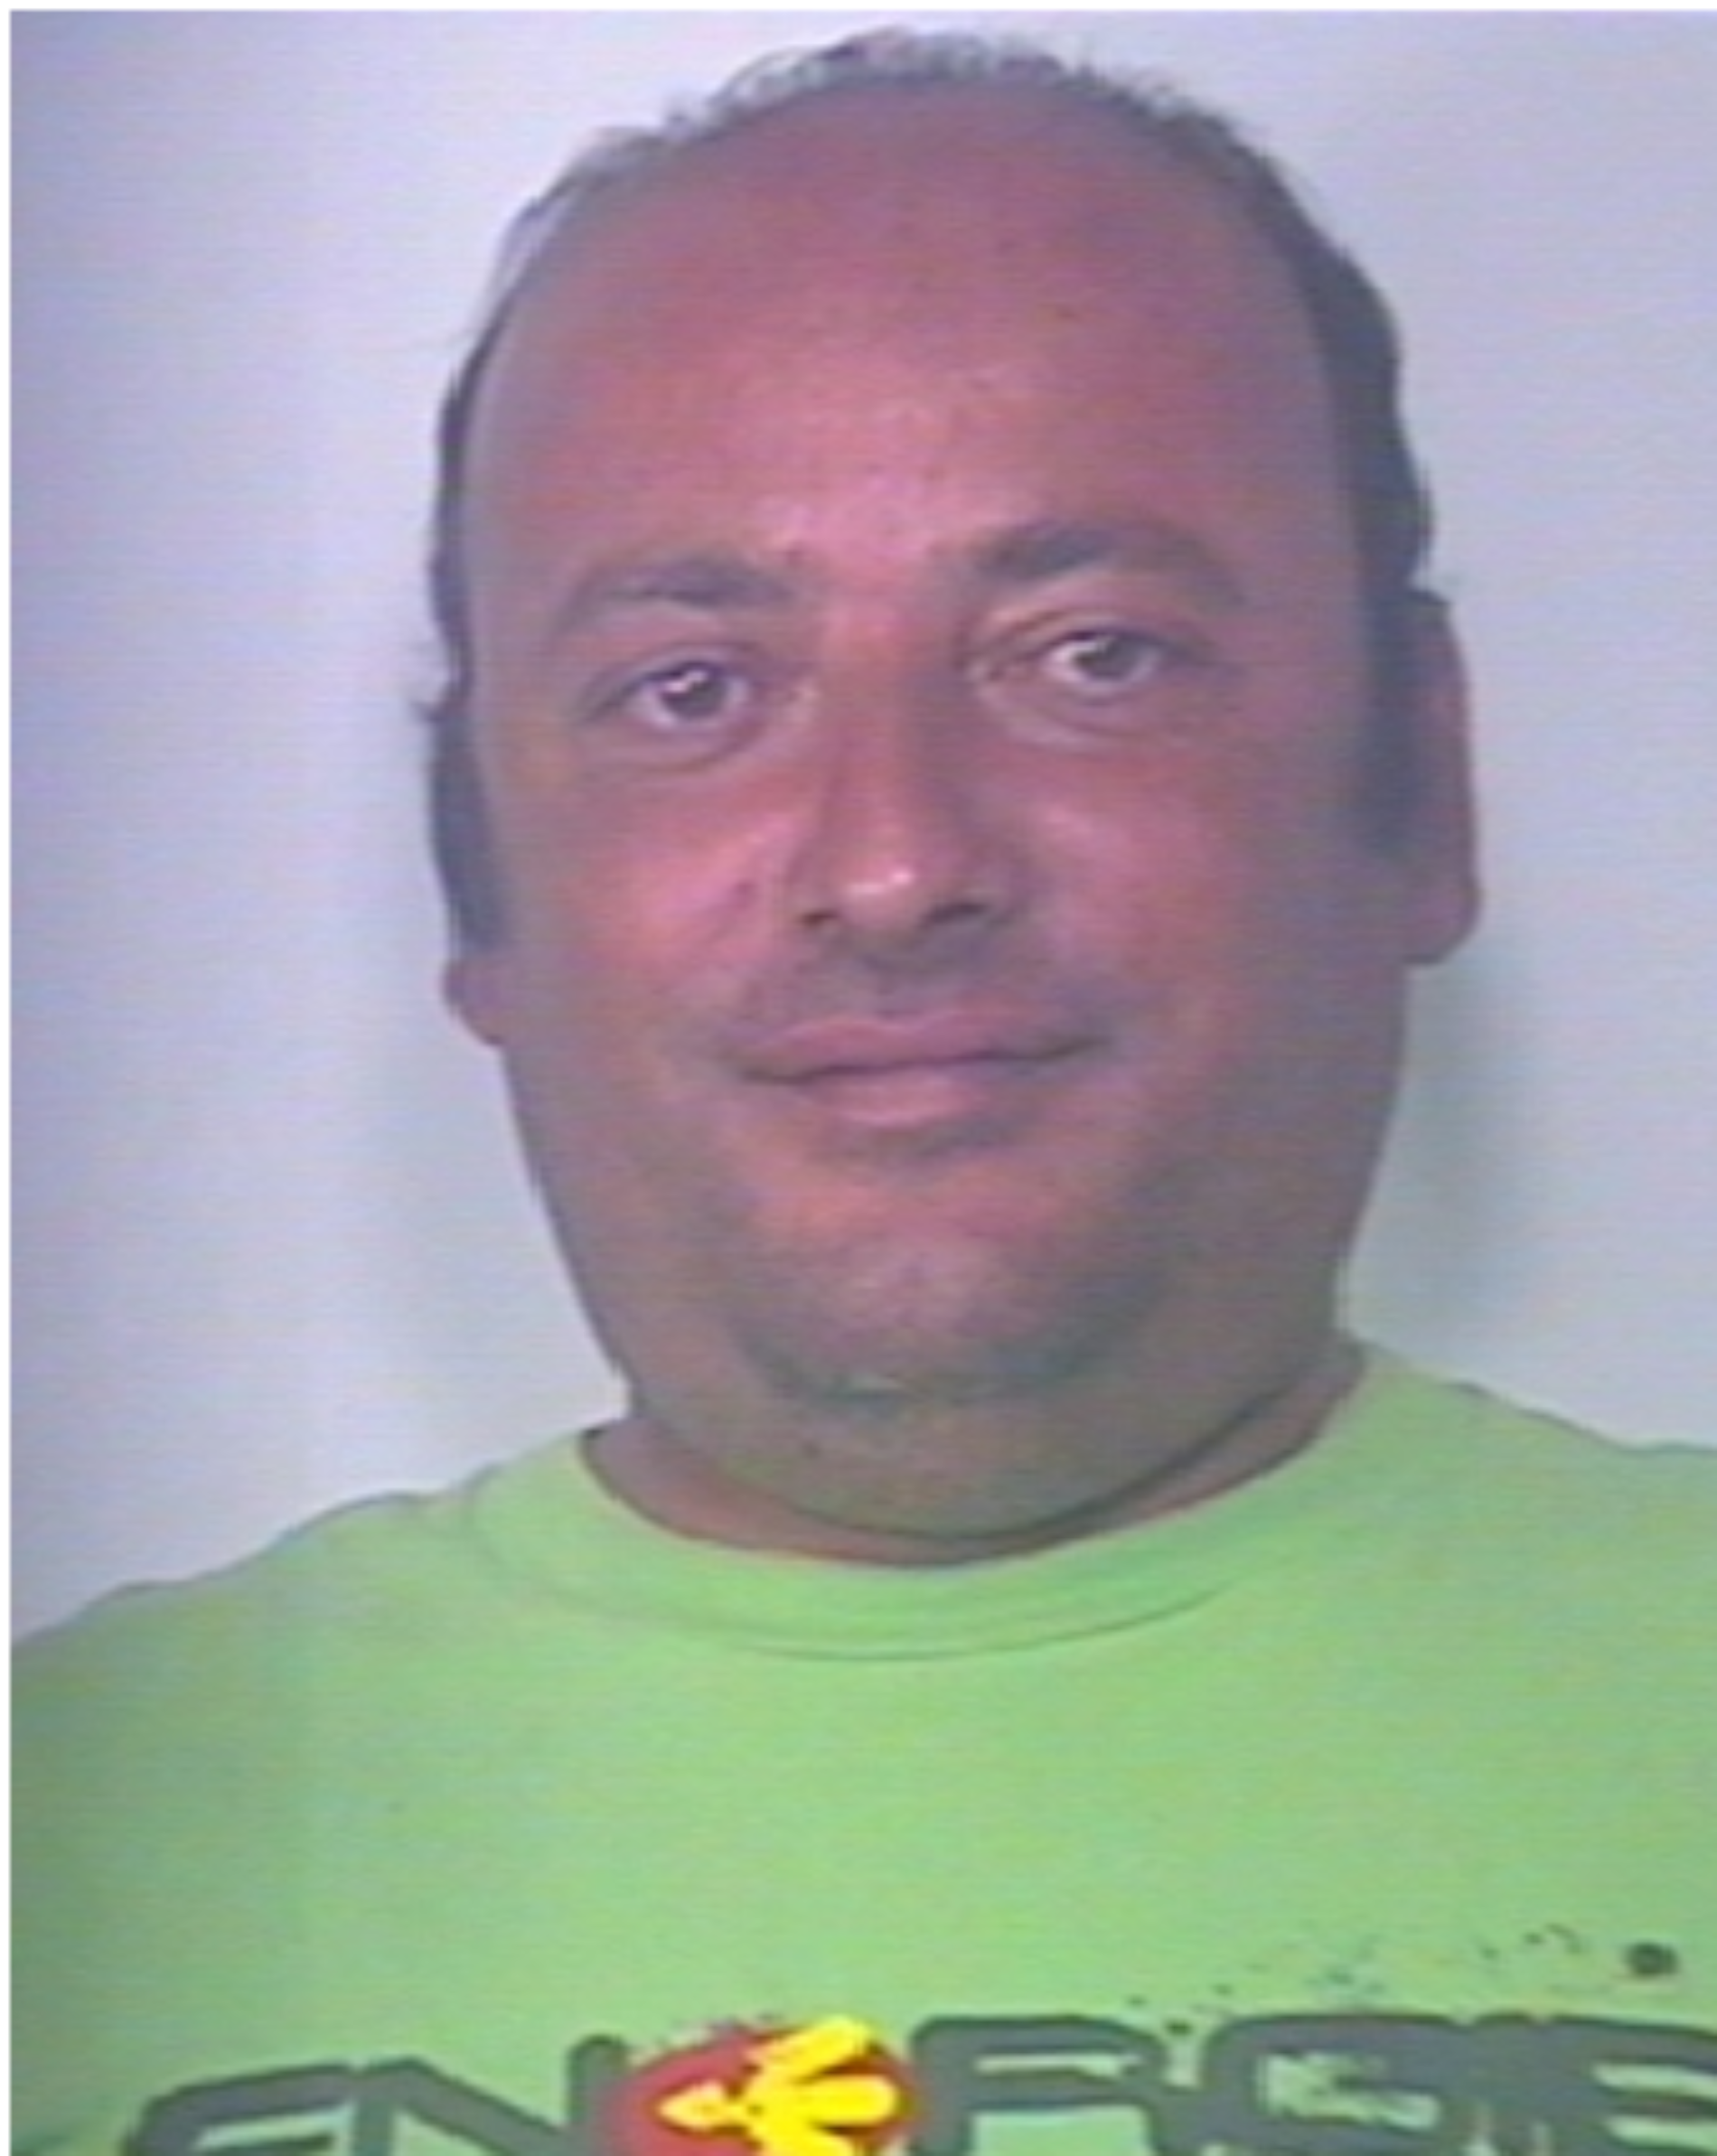 Arrestato il pregiudicato Rocco Michele Antonio Monte. Dovrà scontare la pena di 7 anni e 6 mesi di reclusione per i reati di concorso in in spaccio di sostanze stupefacenti.